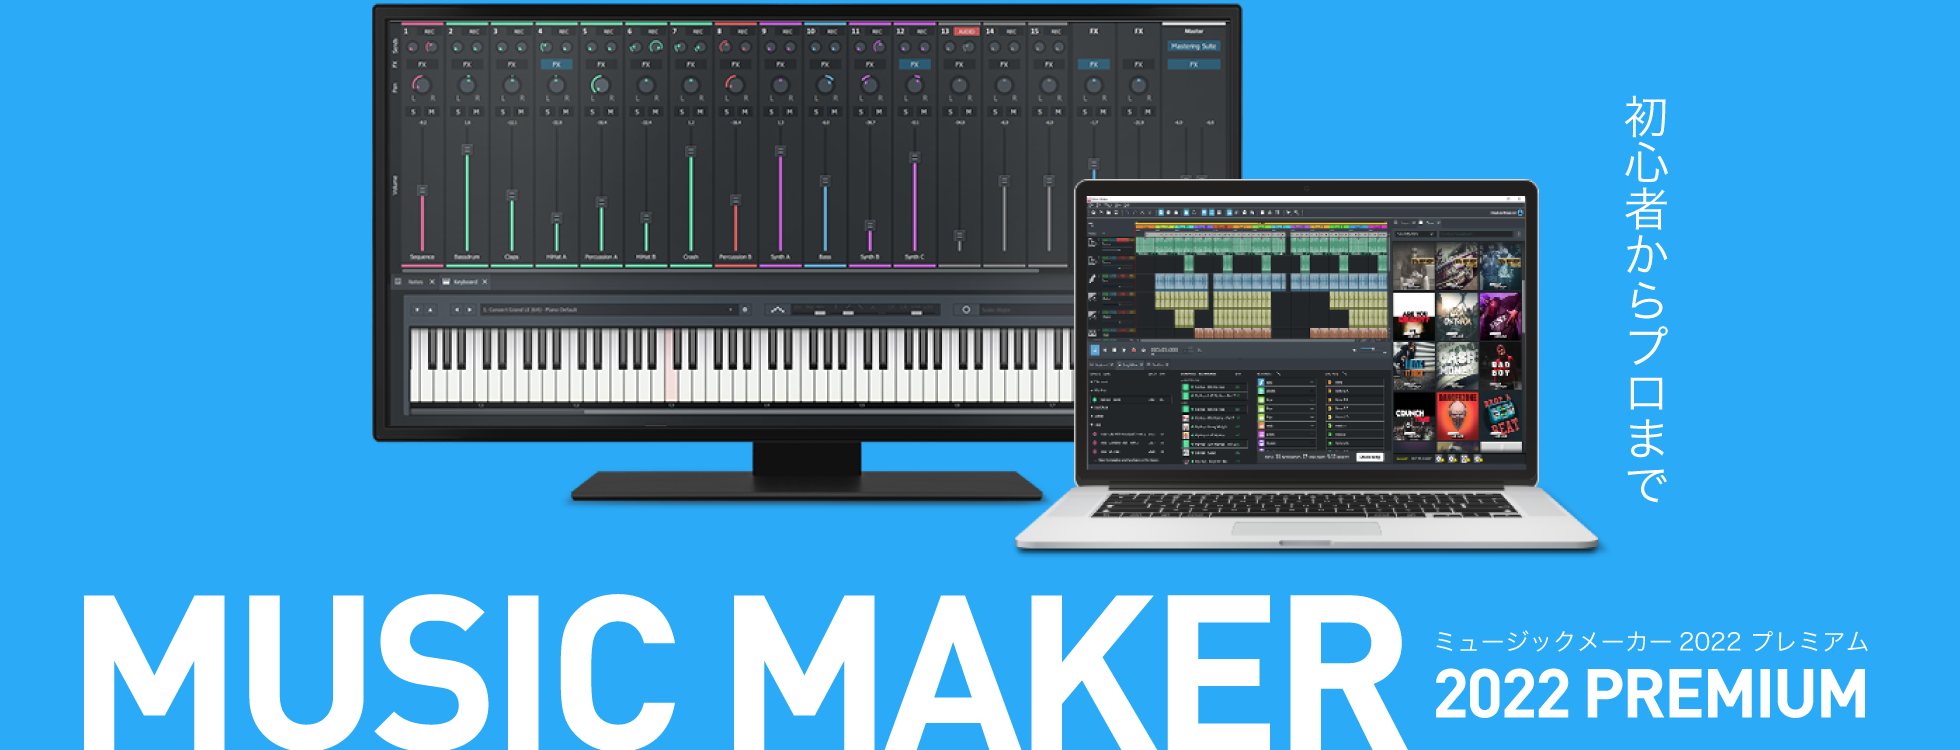 「Music Maker 2022 Premium」